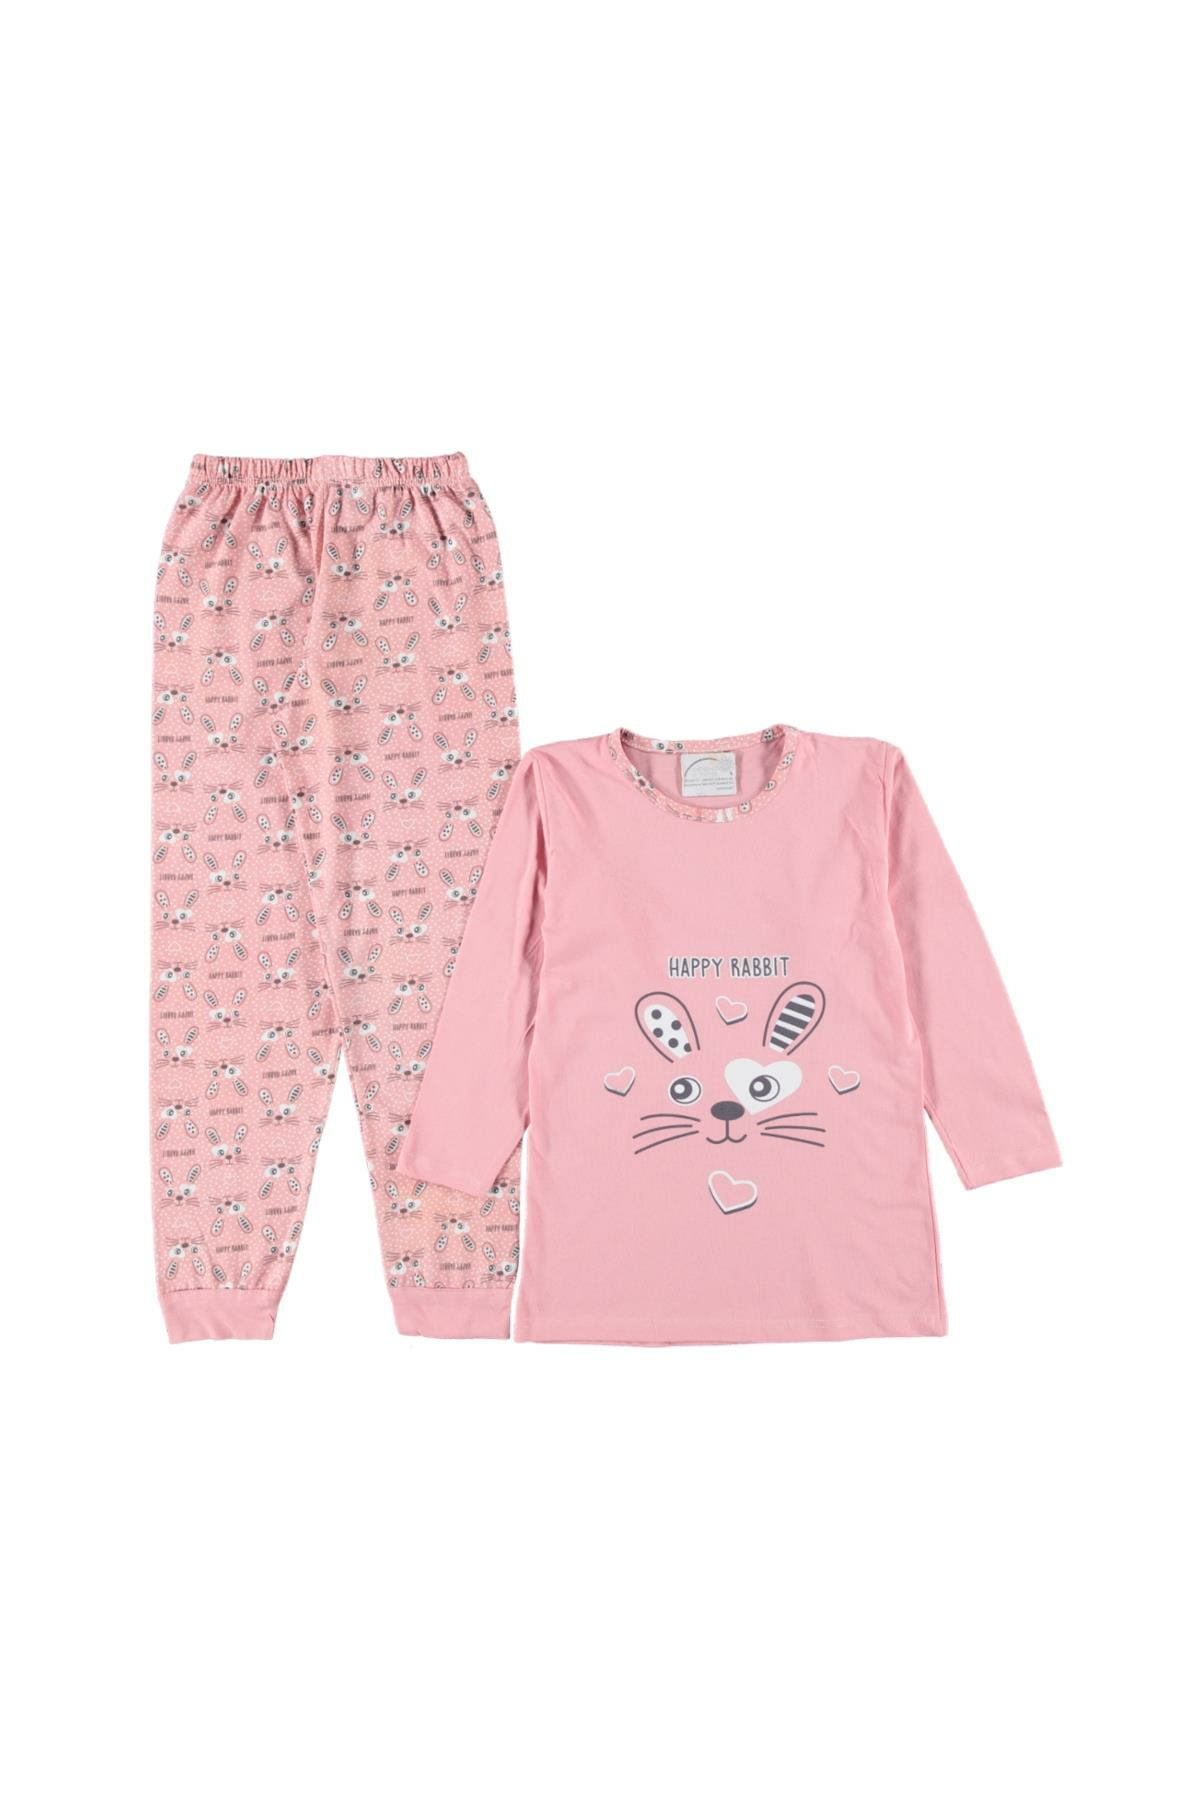 Pundikids Kız Çocuk Pijama Takımı